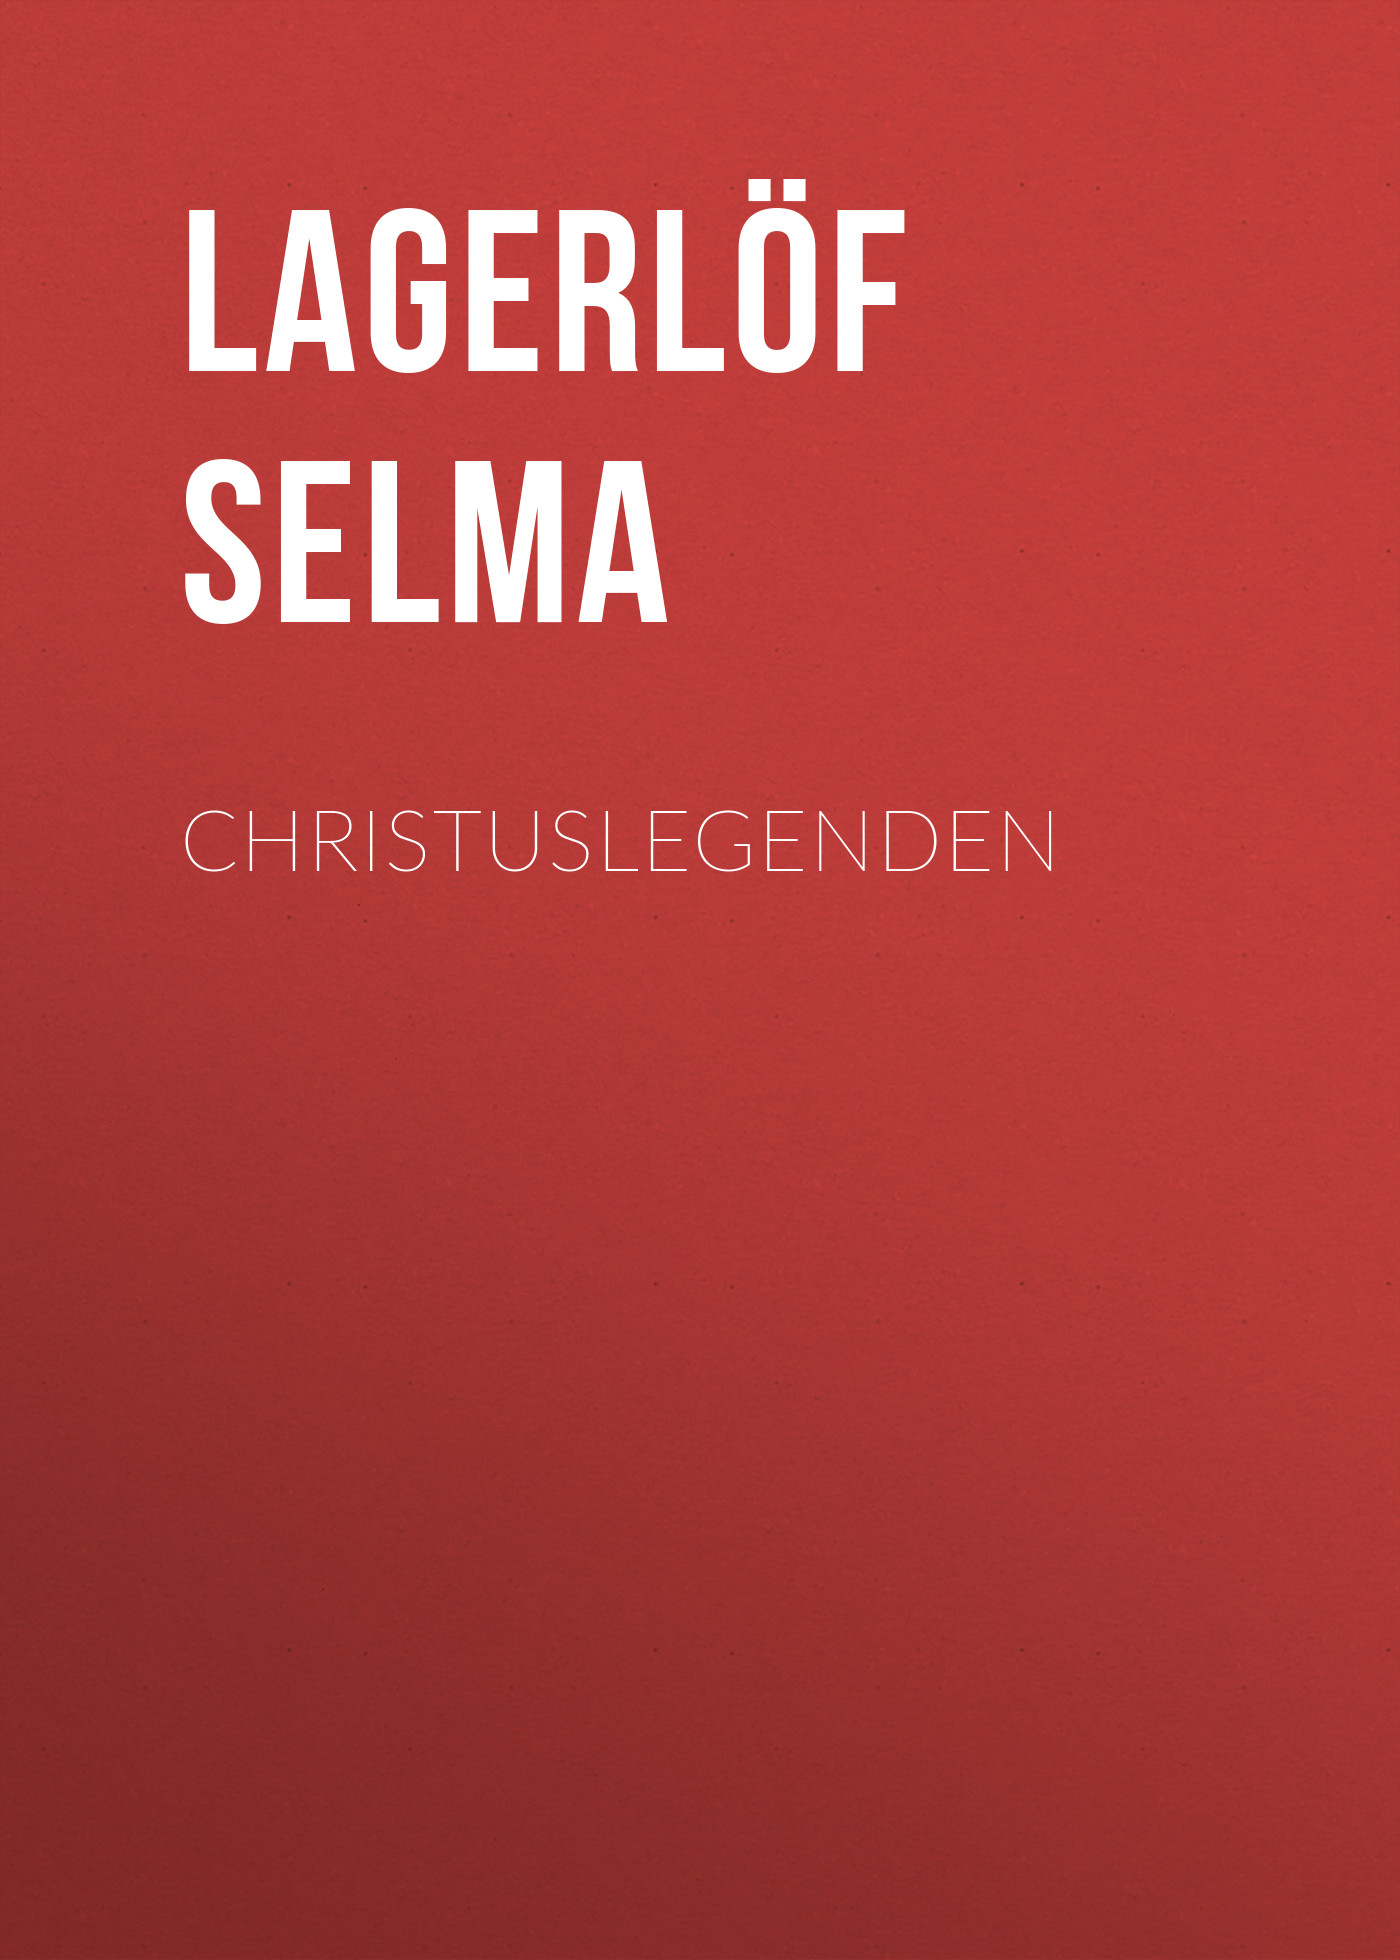 Книга Christuslegenden из серии , созданная Selma Lagerlöf, может относится к жанру Зарубежная старинная литература, Зарубежная классика. Стоимость электронной книги Christuslegenden с идентификатором 25230100 составляет 0 руб.